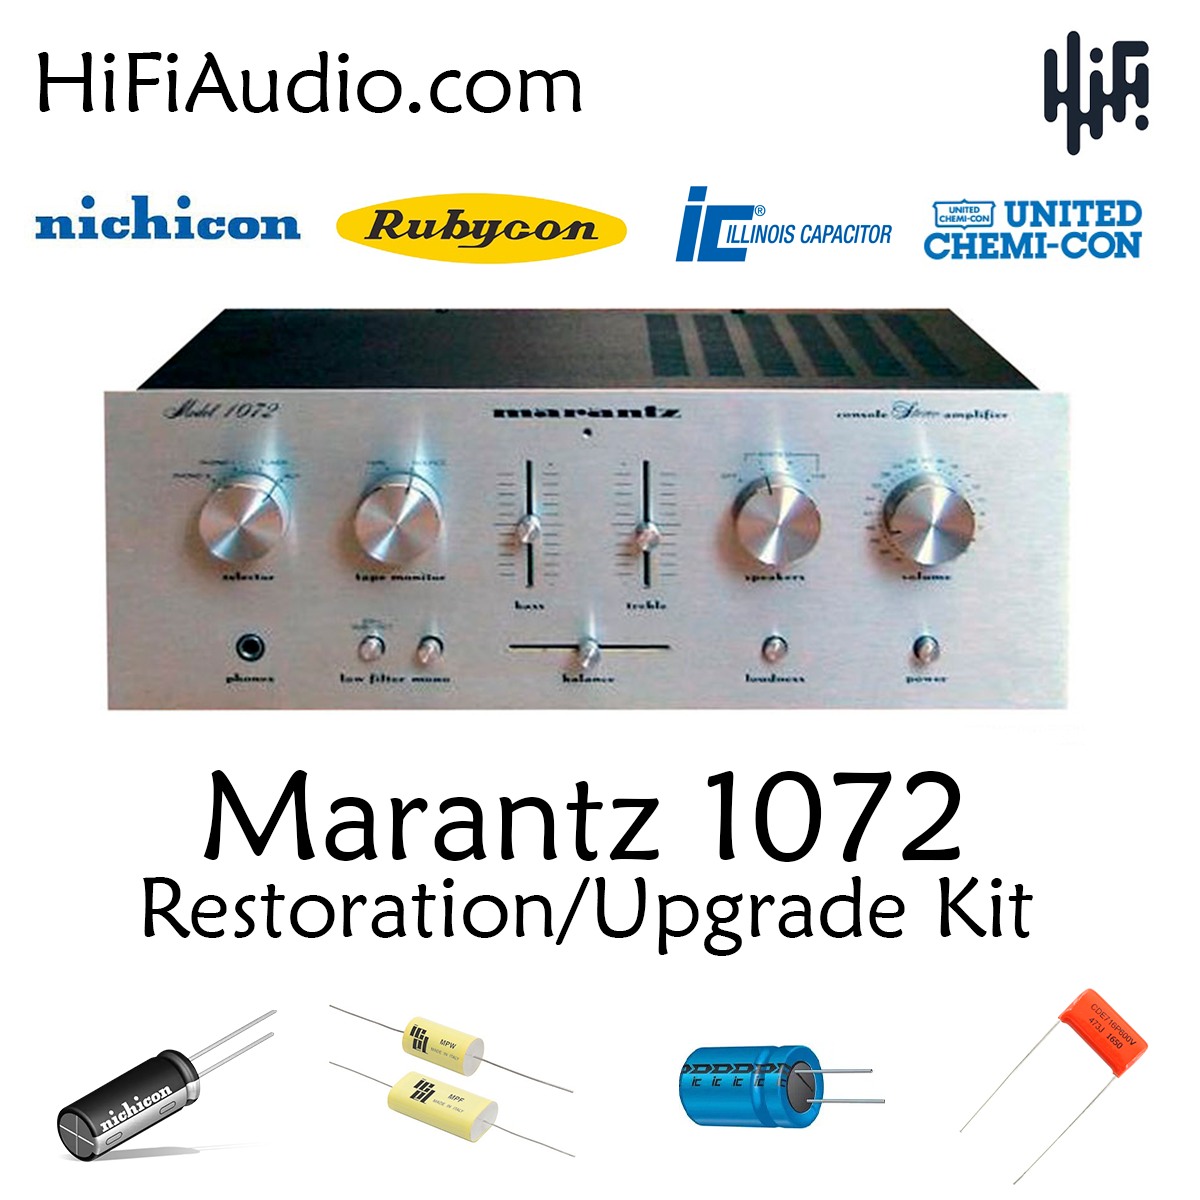 Buy Marantz 1072 restoration kit HiFi Audio